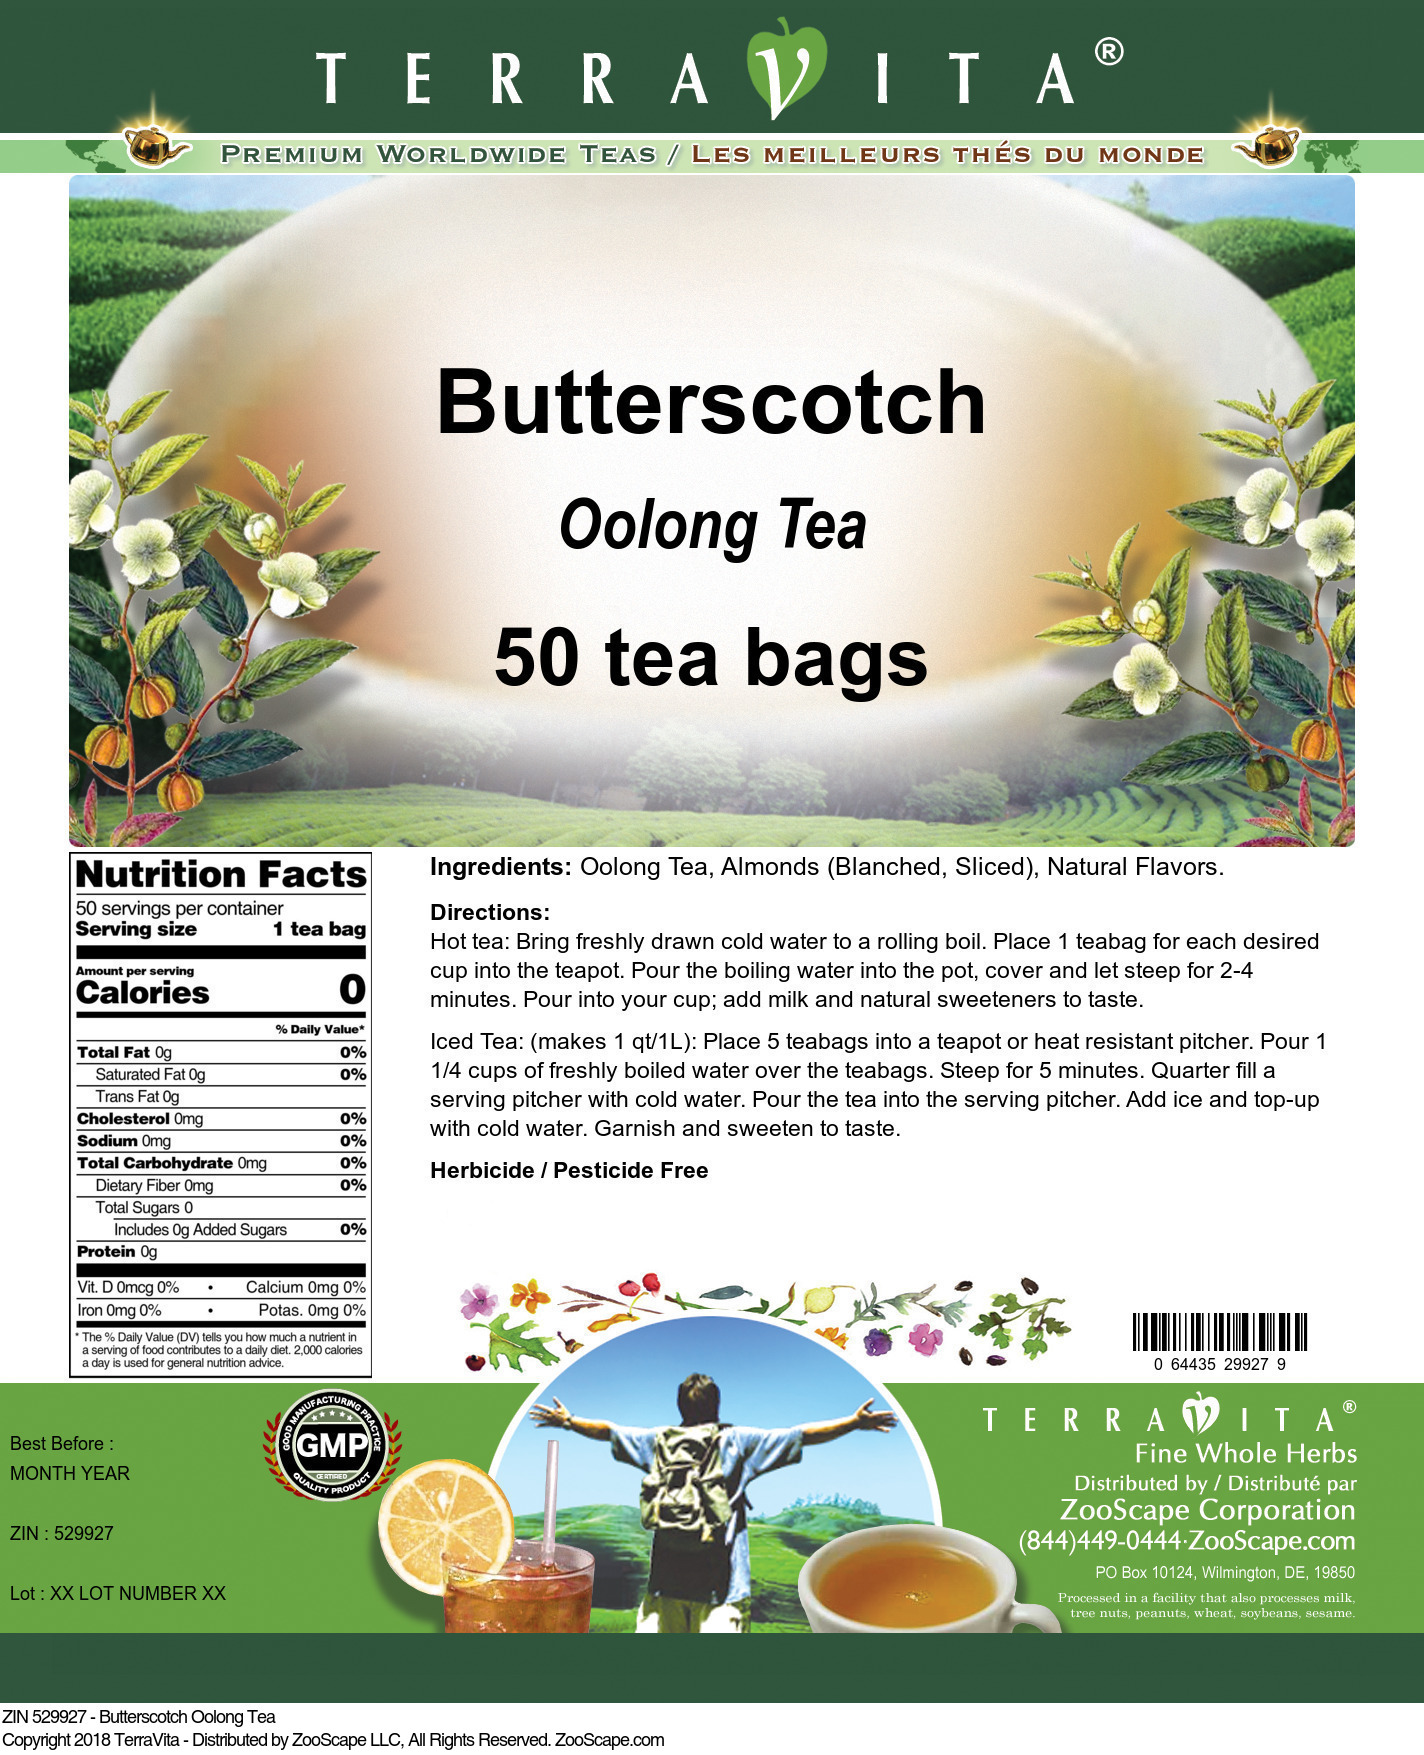 Butterscotch Oolong Tea - Label